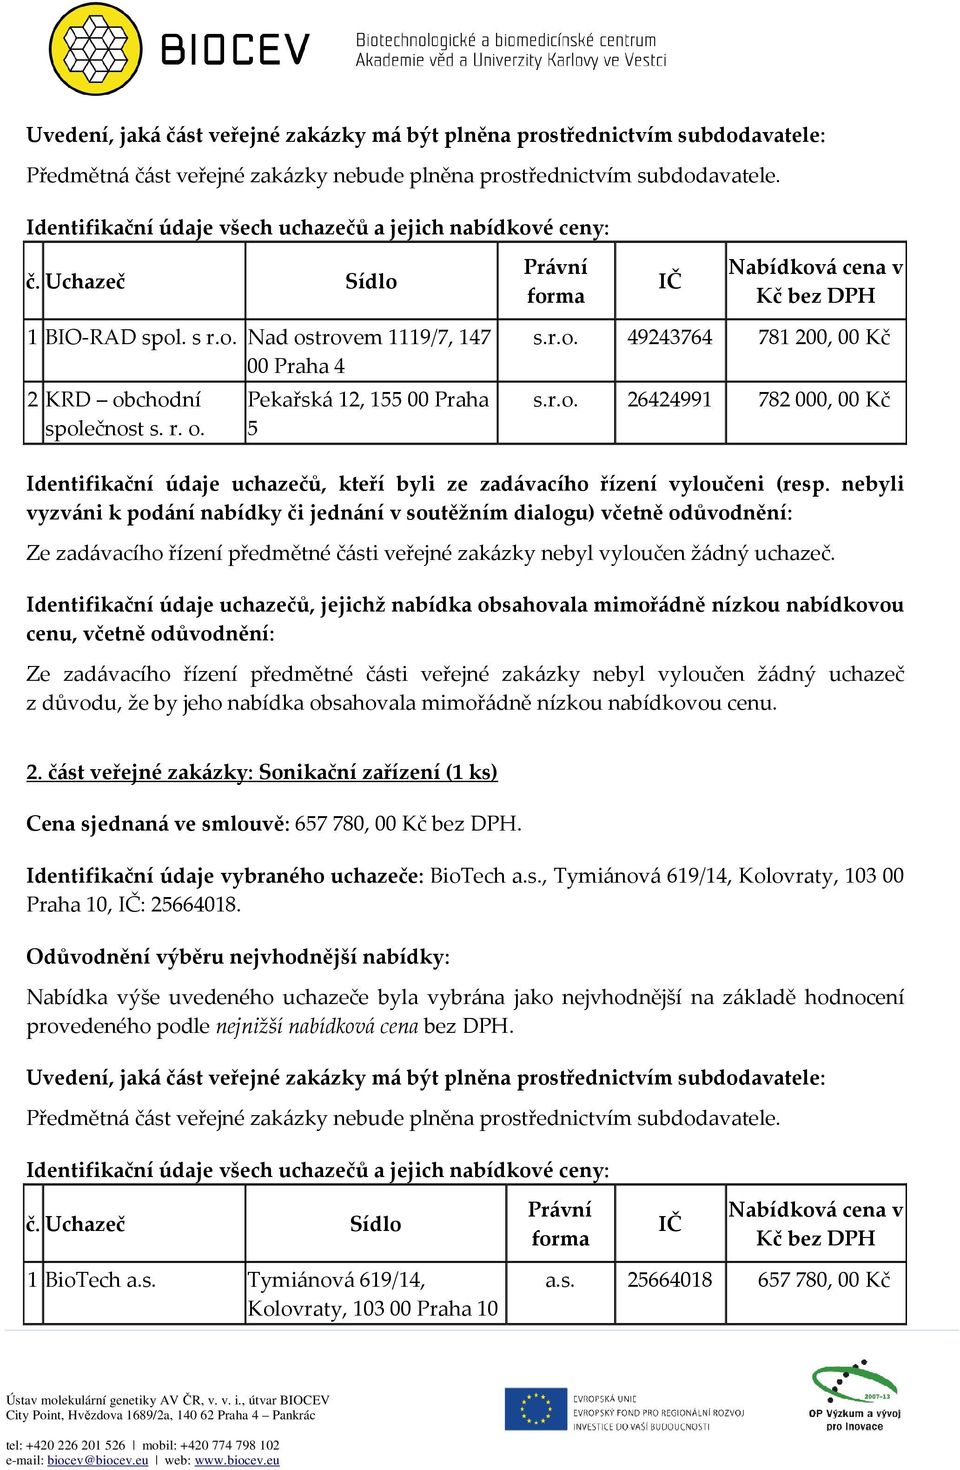 Identifikační údaje vybraného uchazeče: BioTech a.s., Tymiánová 619/14, Kolovraty, 103 00 Praha 10, : 25664018.